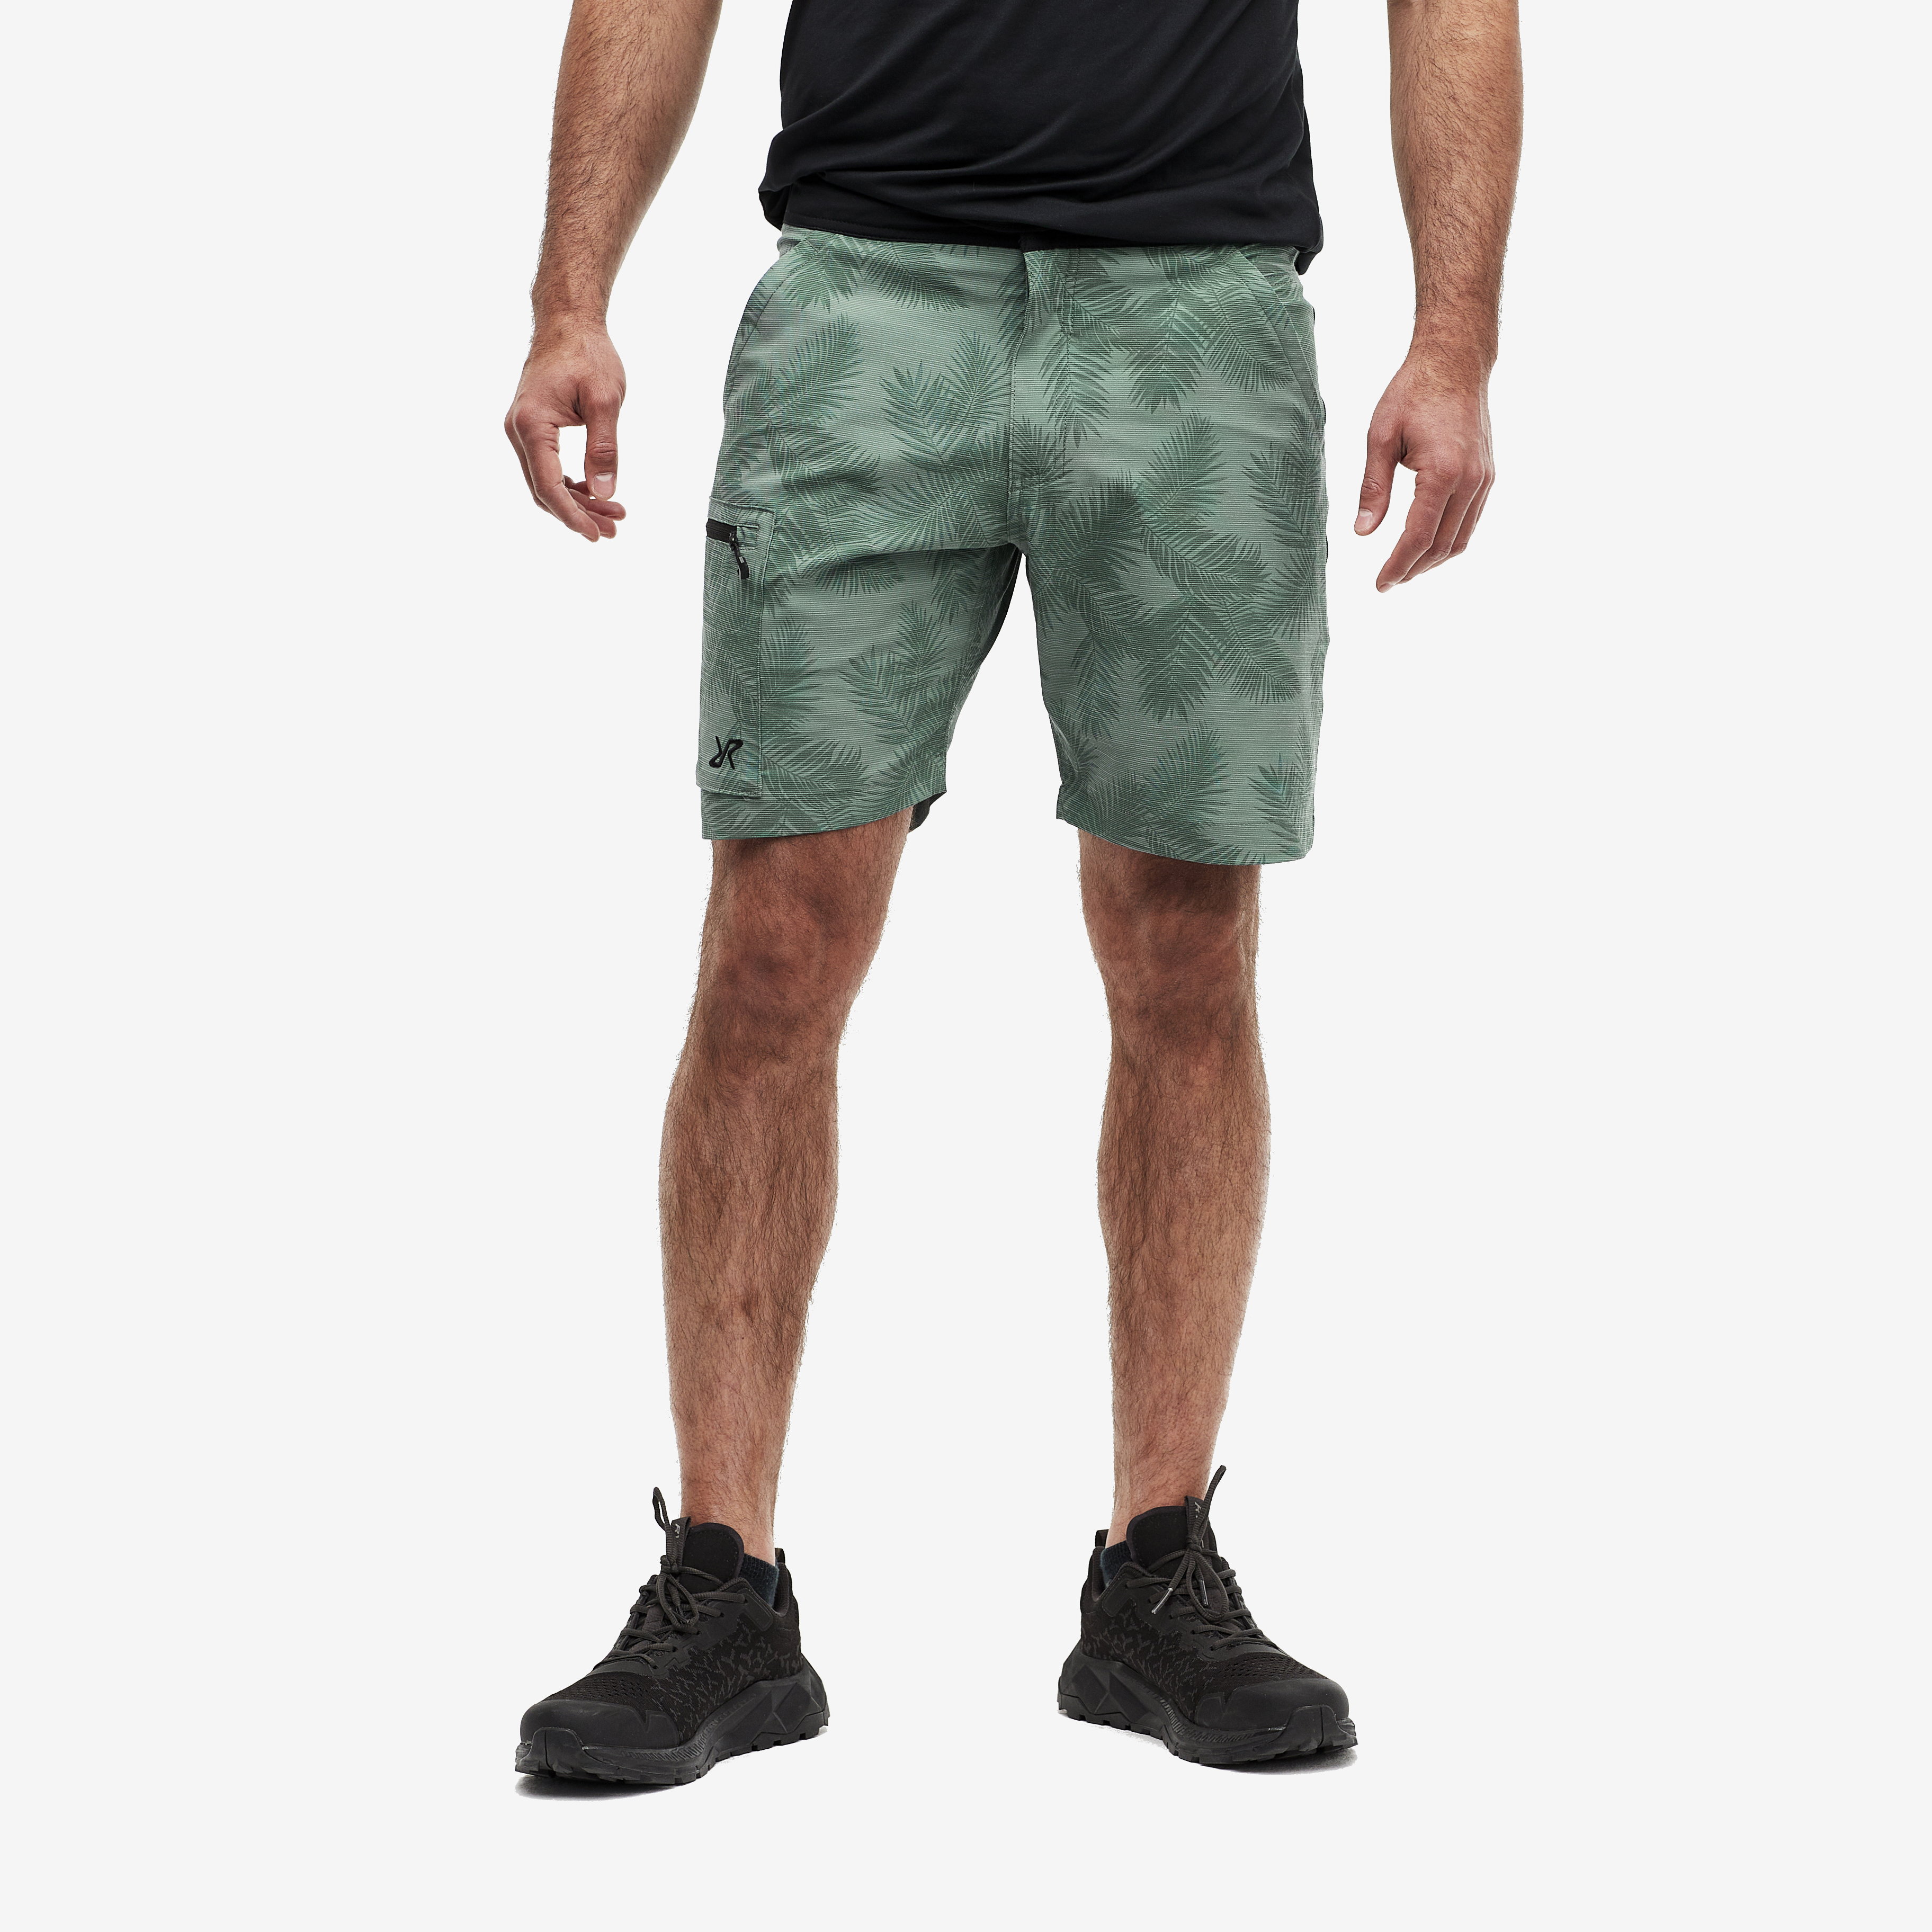 Boarderline Shorts – Herr – Atlantic Palm Storlek:S – Byxor > Shorts